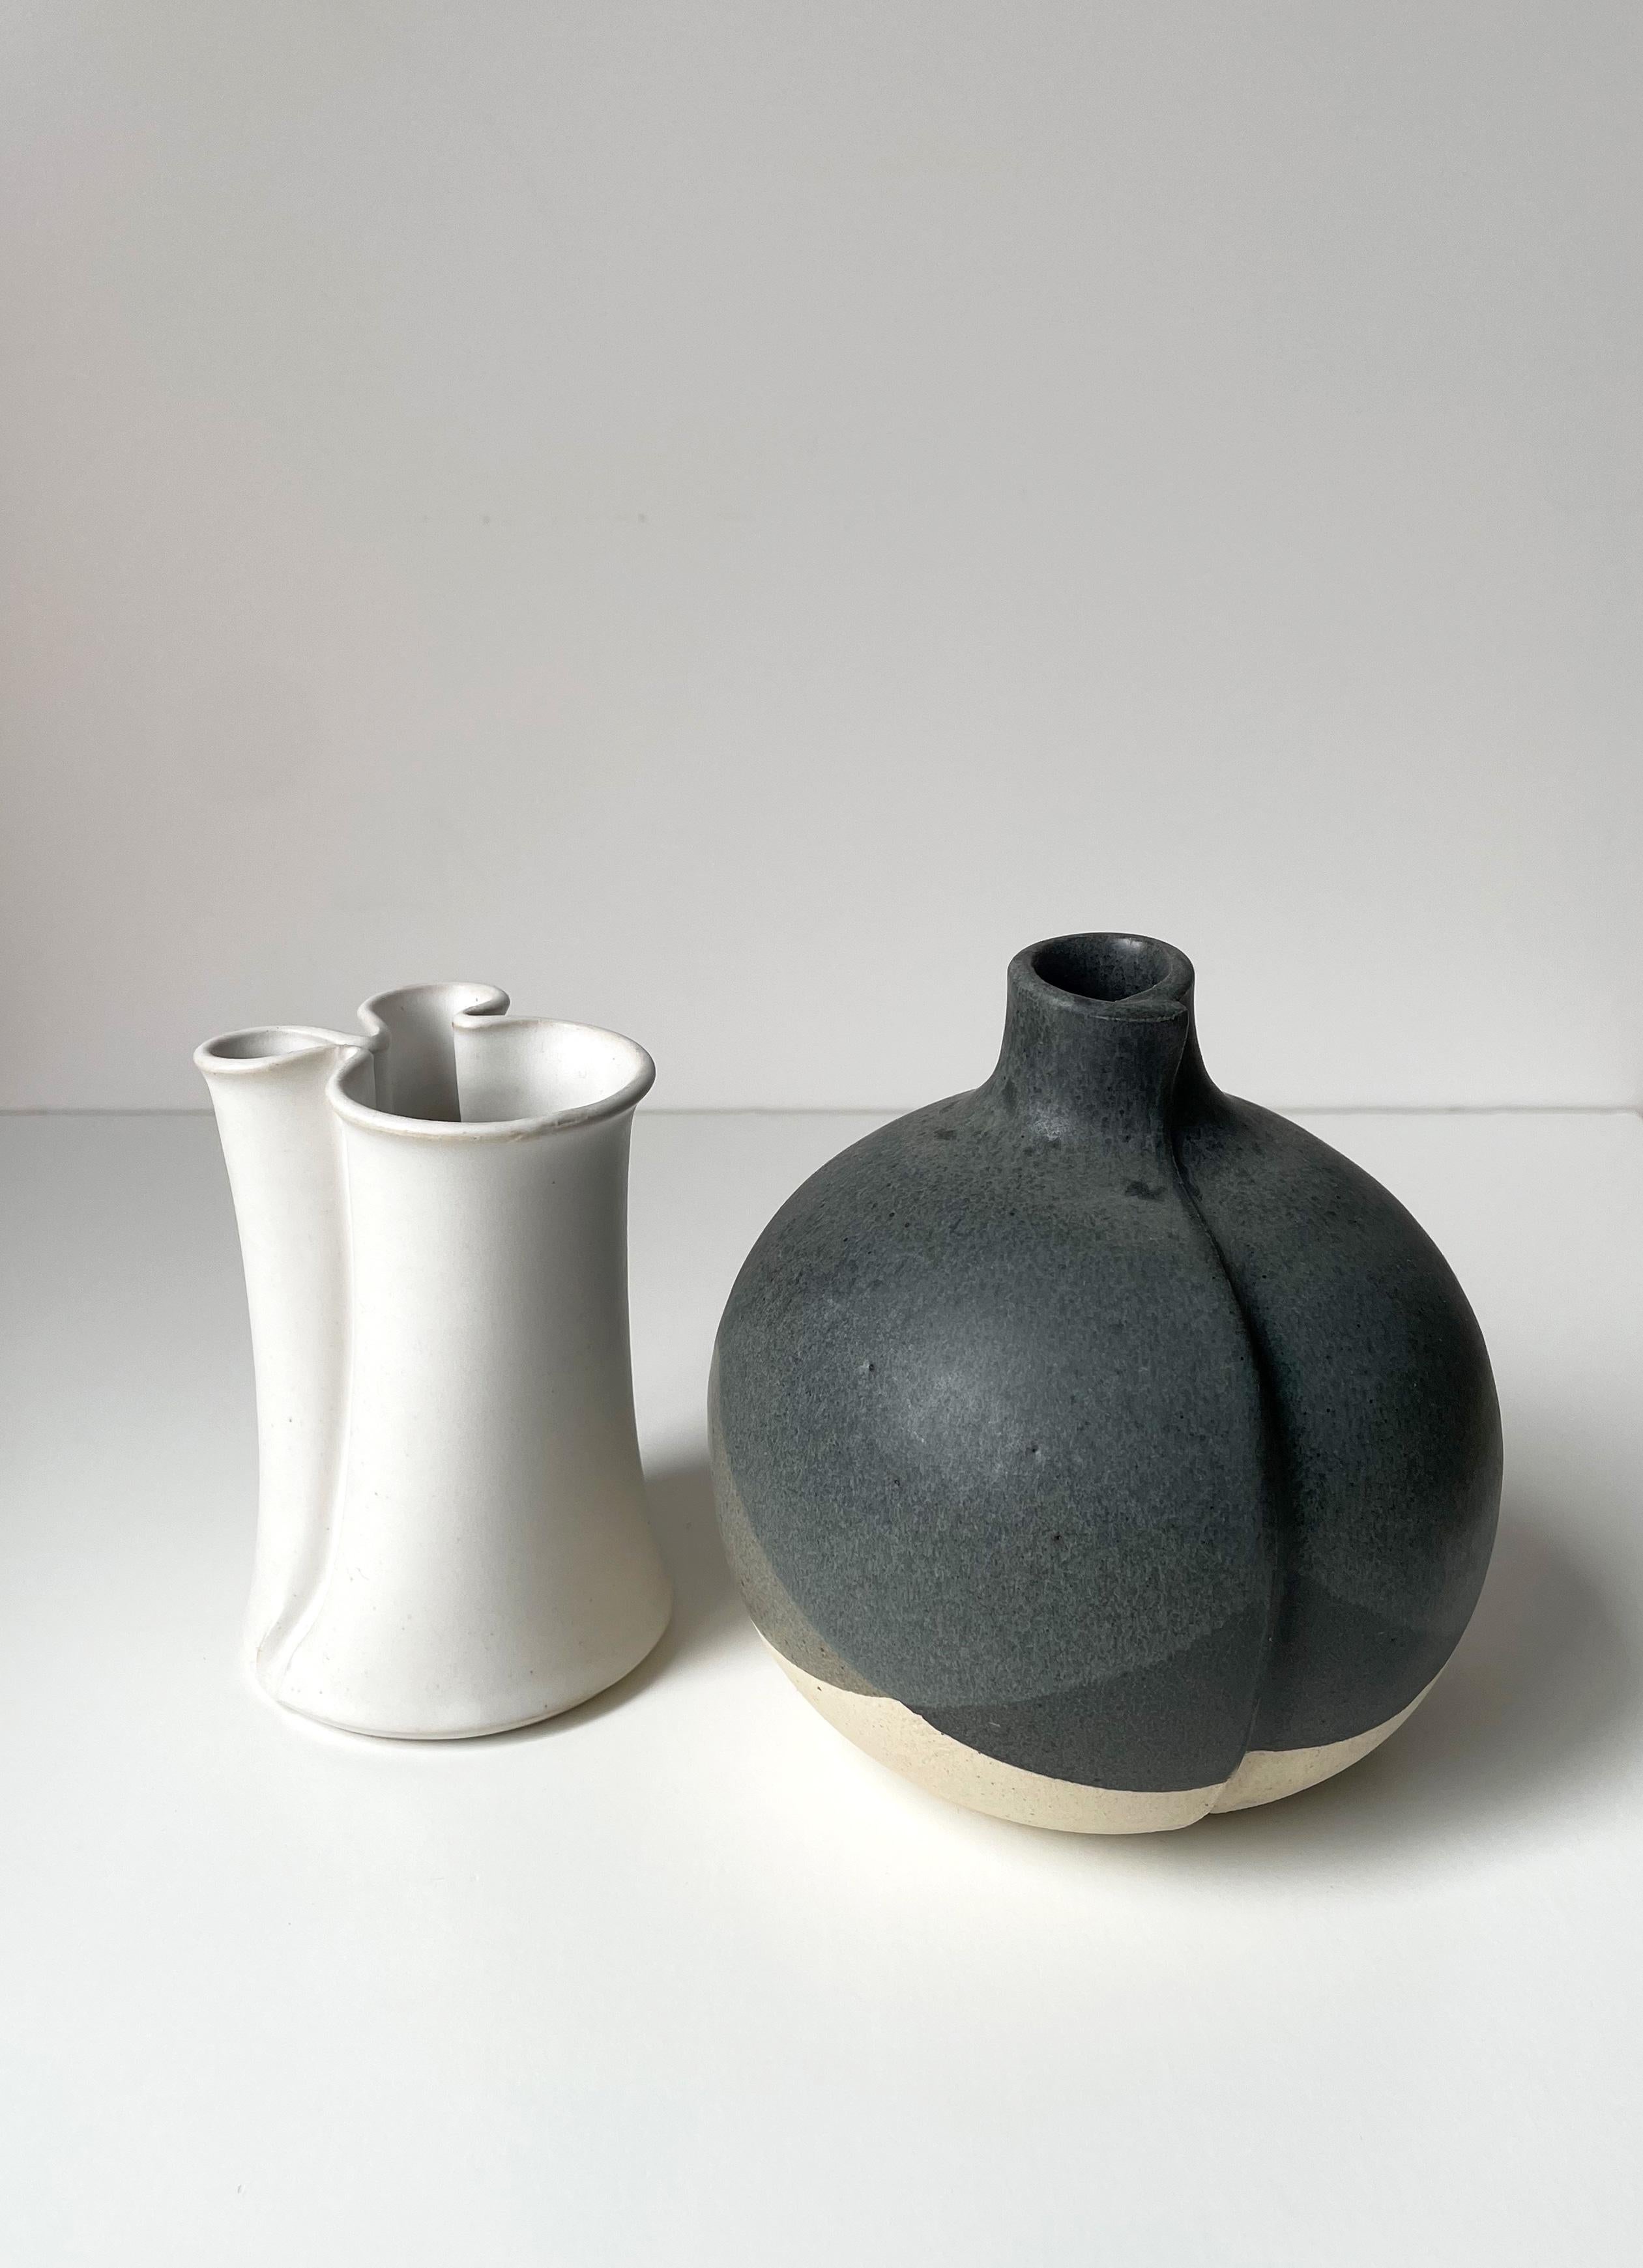 Set aus zwei dänischen Vasen der Moderne mit weichen, organischen Formen und gedeckten Farben, die der renommierte Keramikkünstler Aage Würtz in den 1980er Jahren entwarf. Das Vater-Sohn-Duo KH Würtz ist eines der bekanntesten dänischen